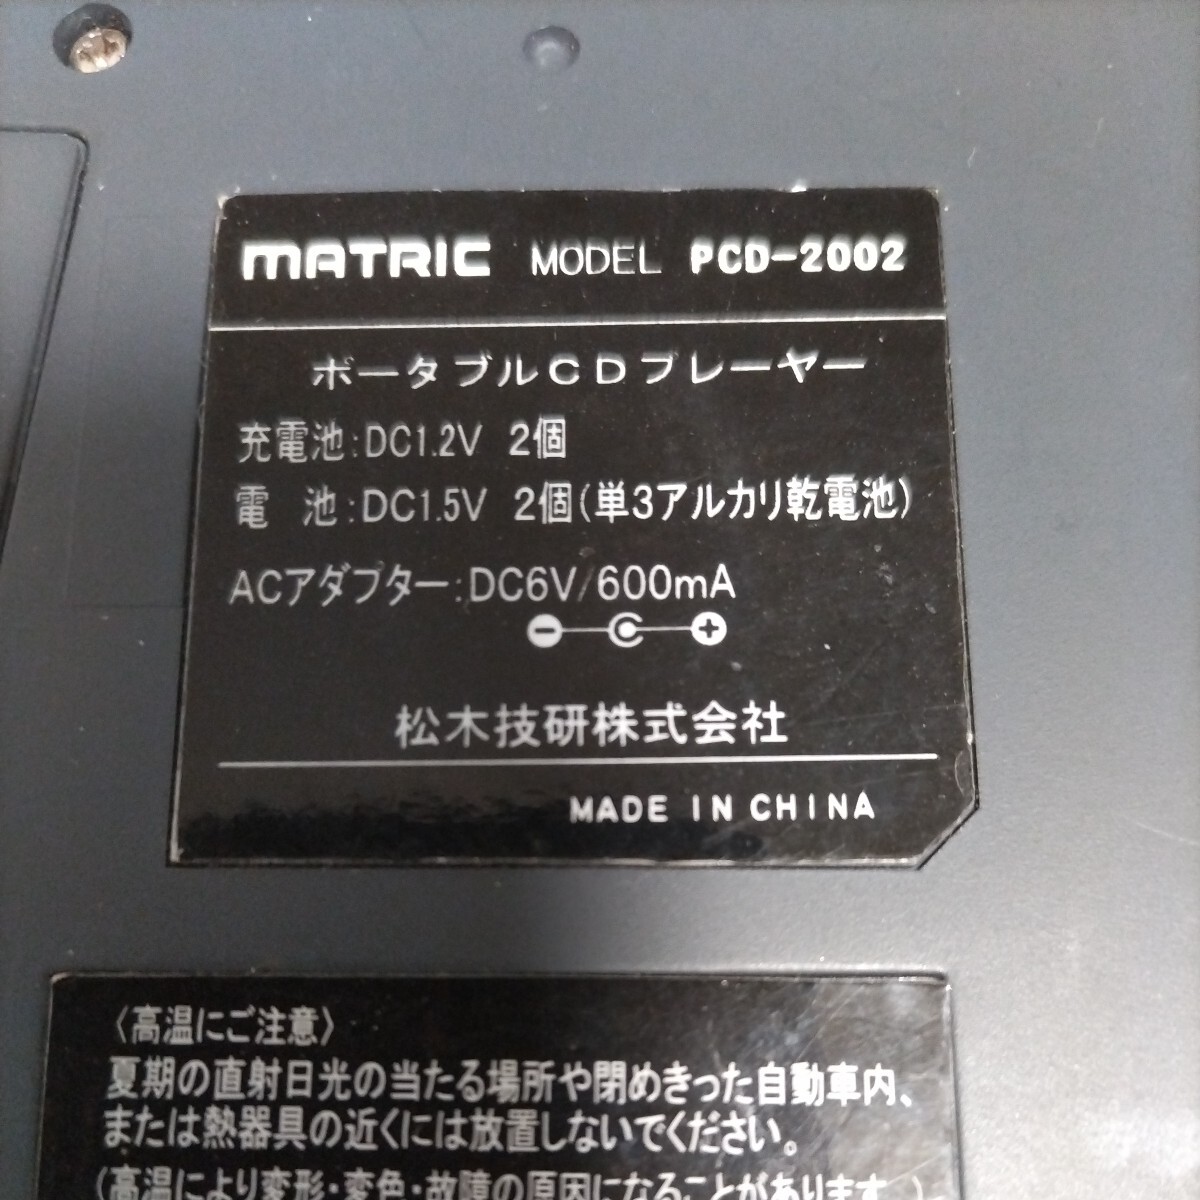 MATRIC портативный CD плеер PCD-2002 б/у корпус только 